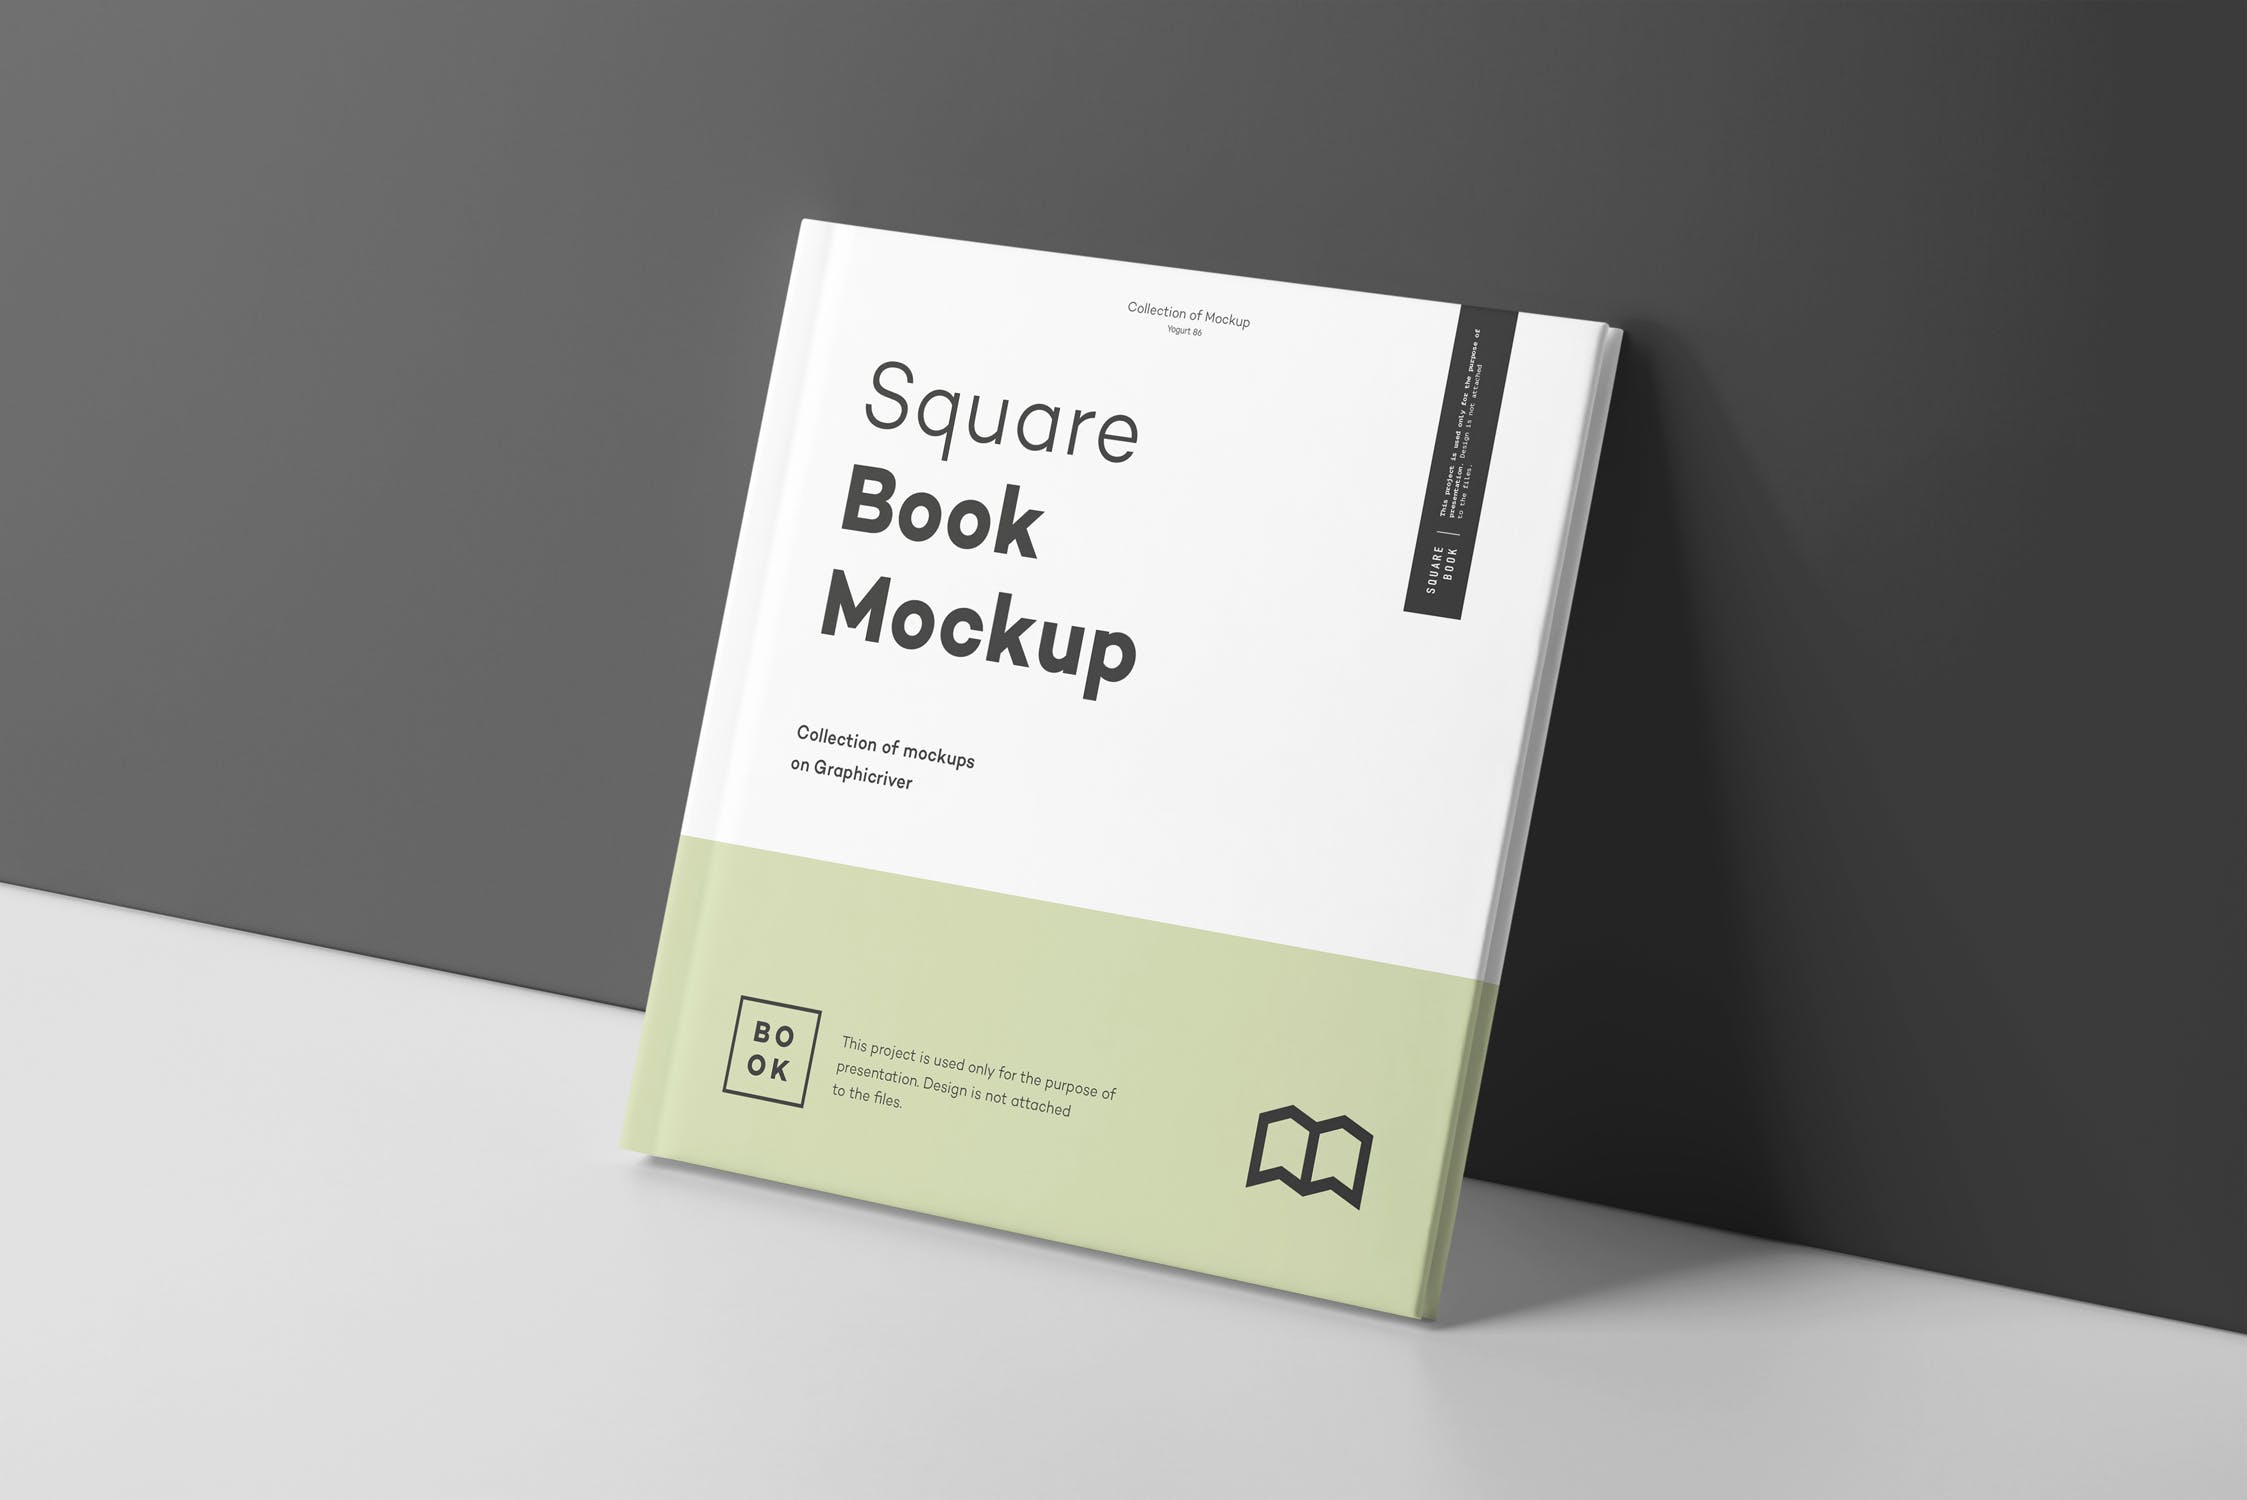 方形精装图书封面&内页版式设计预览样机 Square Book Mock up 2插图(7)